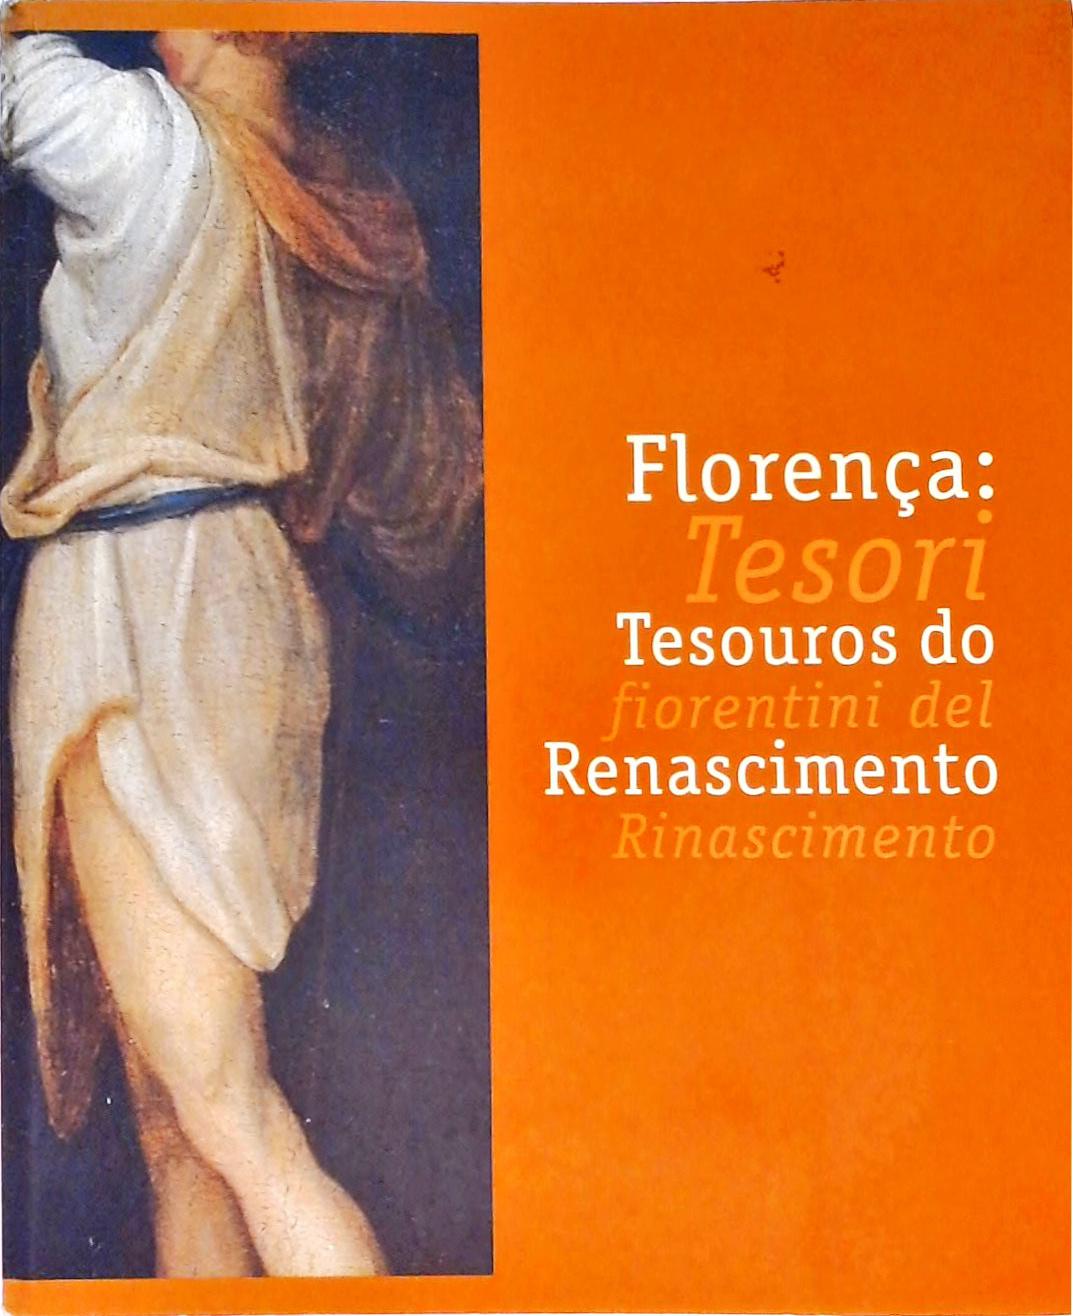 Florença - Tesouros do Renascimento